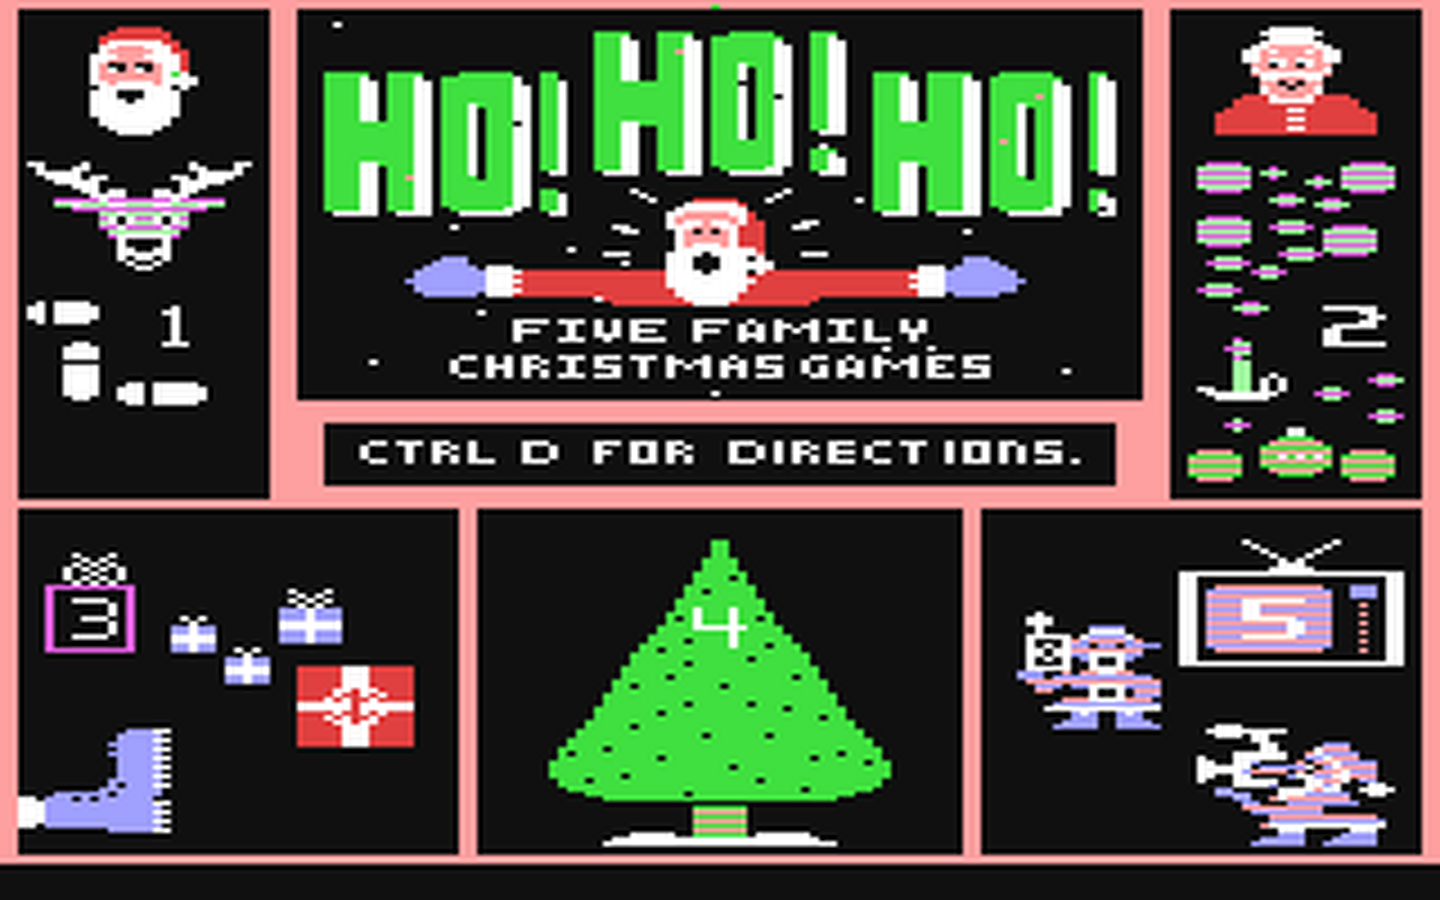 C64 GameBase Ho!_Ho!_Ho! Random_House,_Inc. 1986